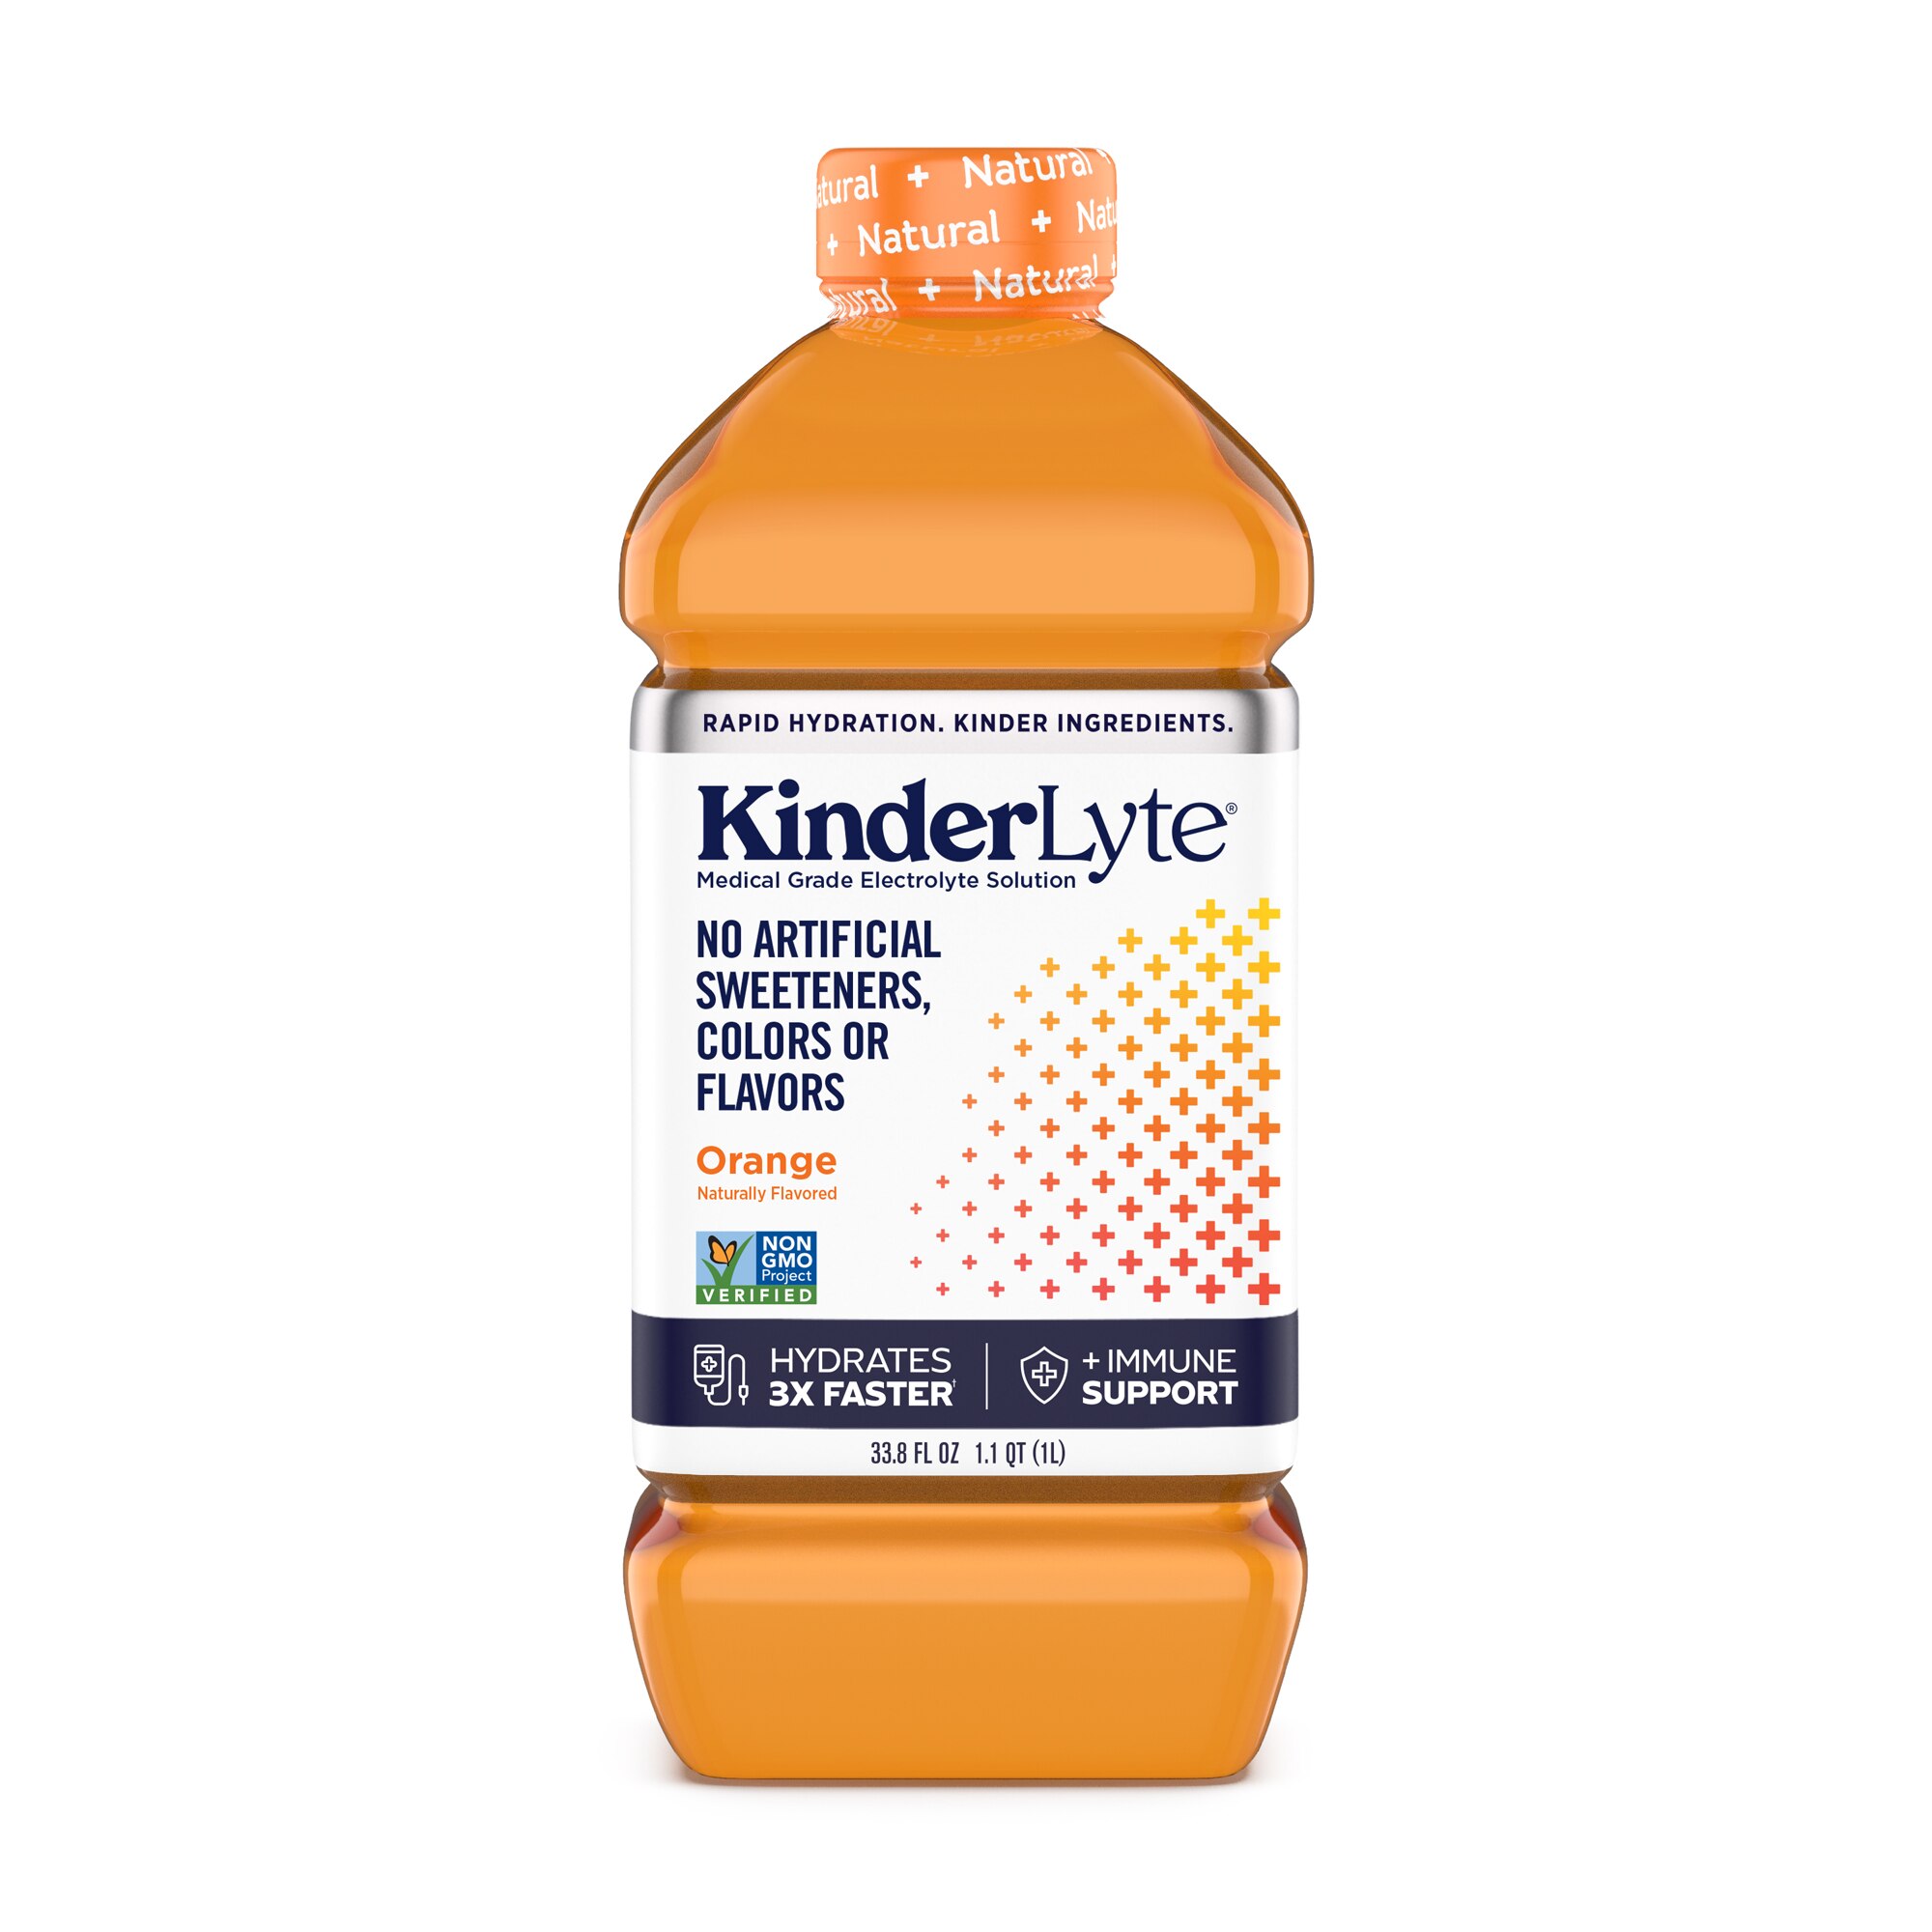 Kinderlyte Natural 33.8 oz Electrolyte drink